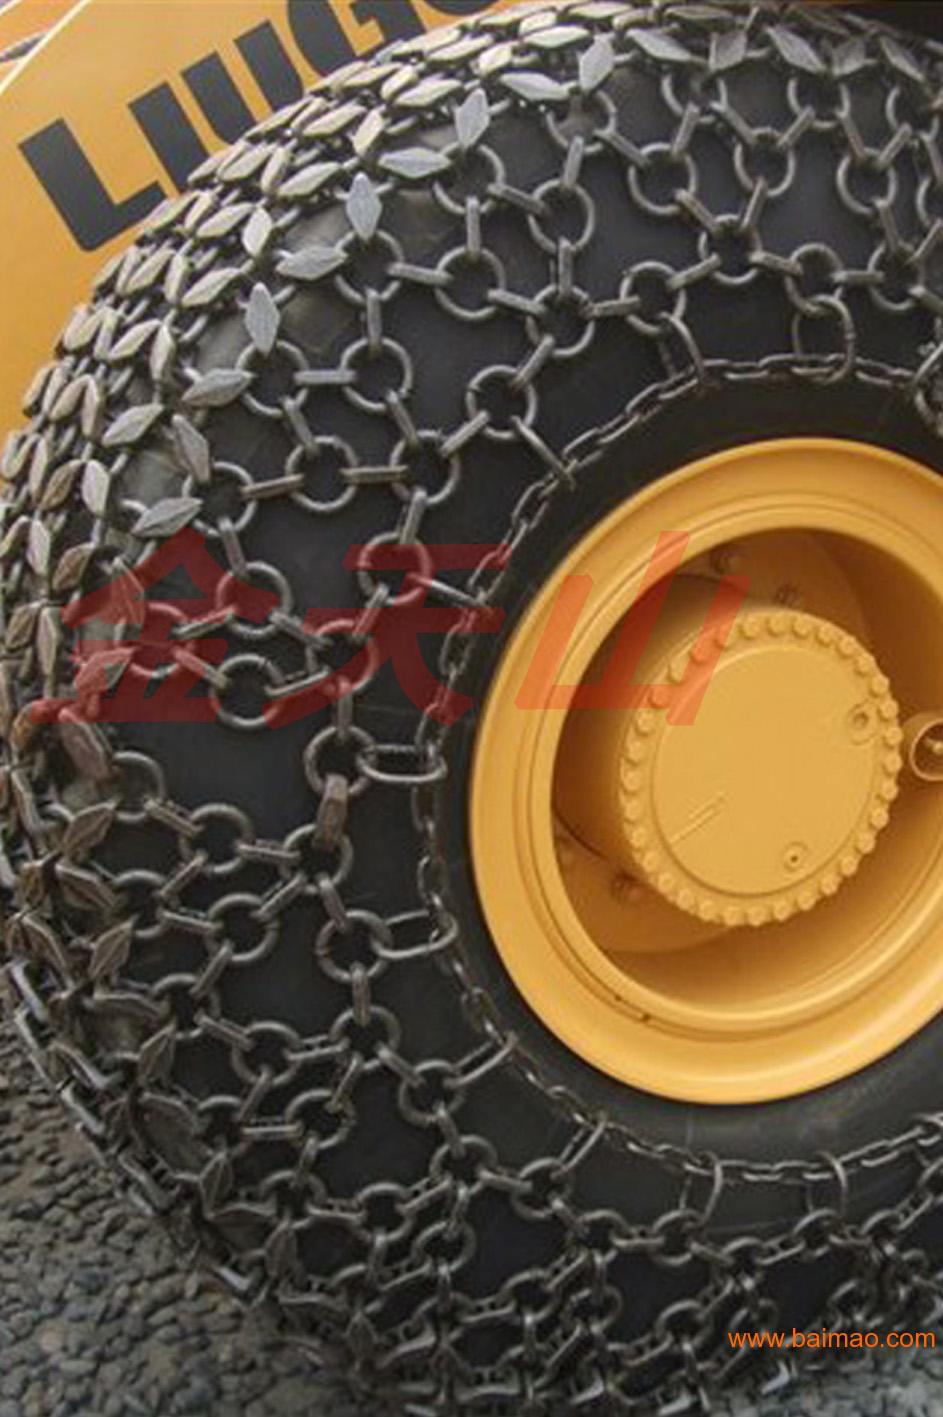 23.5-25锻造型轮胎保护链厂家直销价格